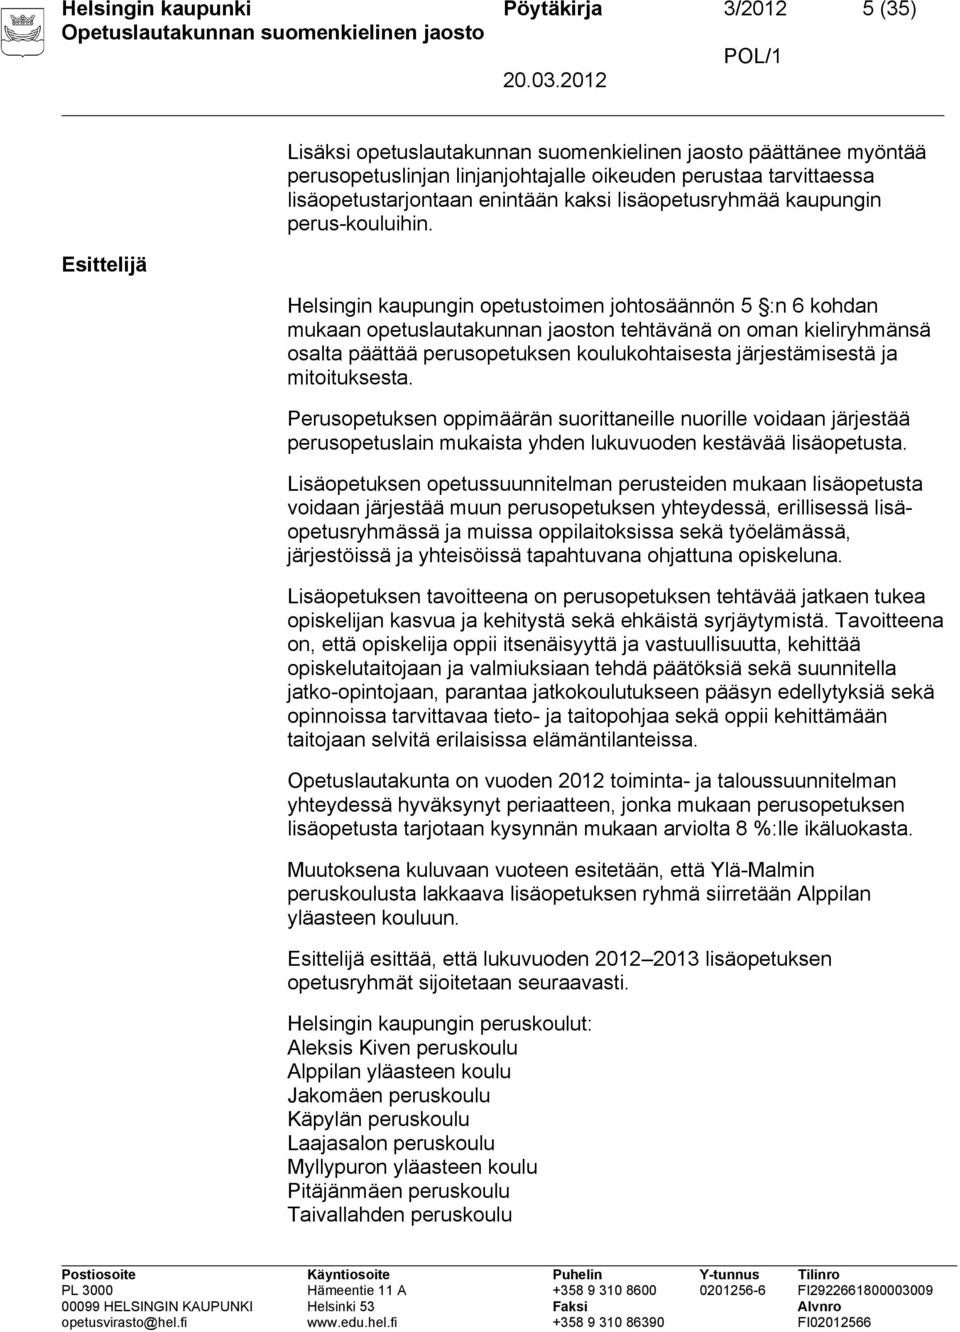 Helsingin kaupungin opetustoimen johtosäännön 5 :n 6 kohdan mukaan opetuslautakunnan jaoston tehtävänä on oman kieliryhmänsä osalta päättää perusopetuksen koulukohtaisesta järjestämisestä ja